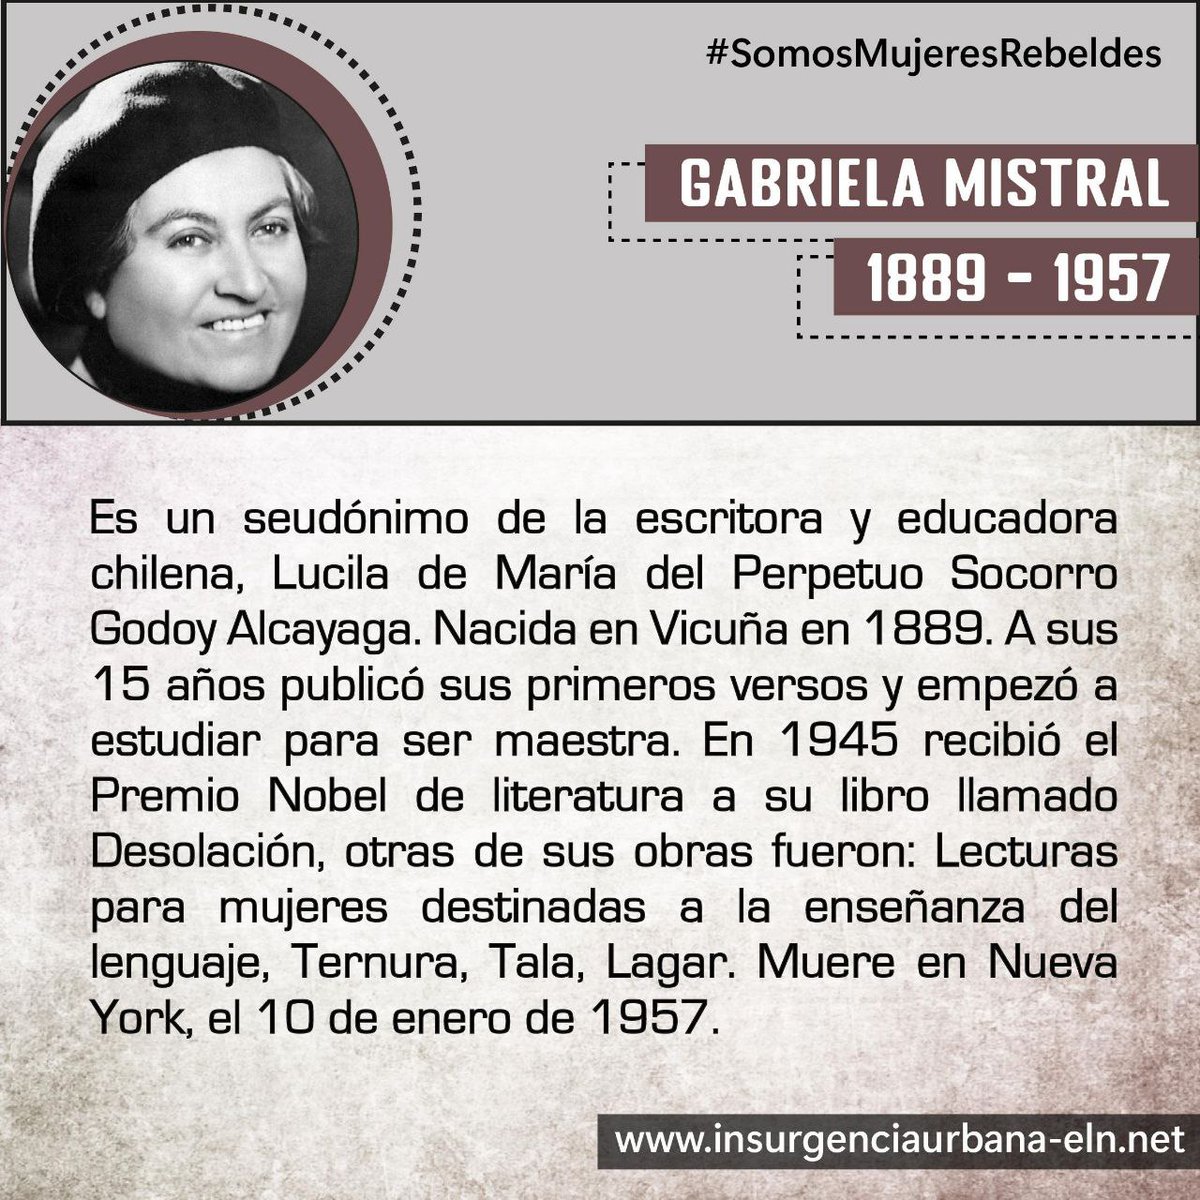 #SomosMujeresRebeldes

GABRIELA MISTRAL
📝Escritora chilena. Premio Nobel de literatura.

#SiempreJuntoAlPueblo
#InsurgenciaUrbana
#ELN60Años